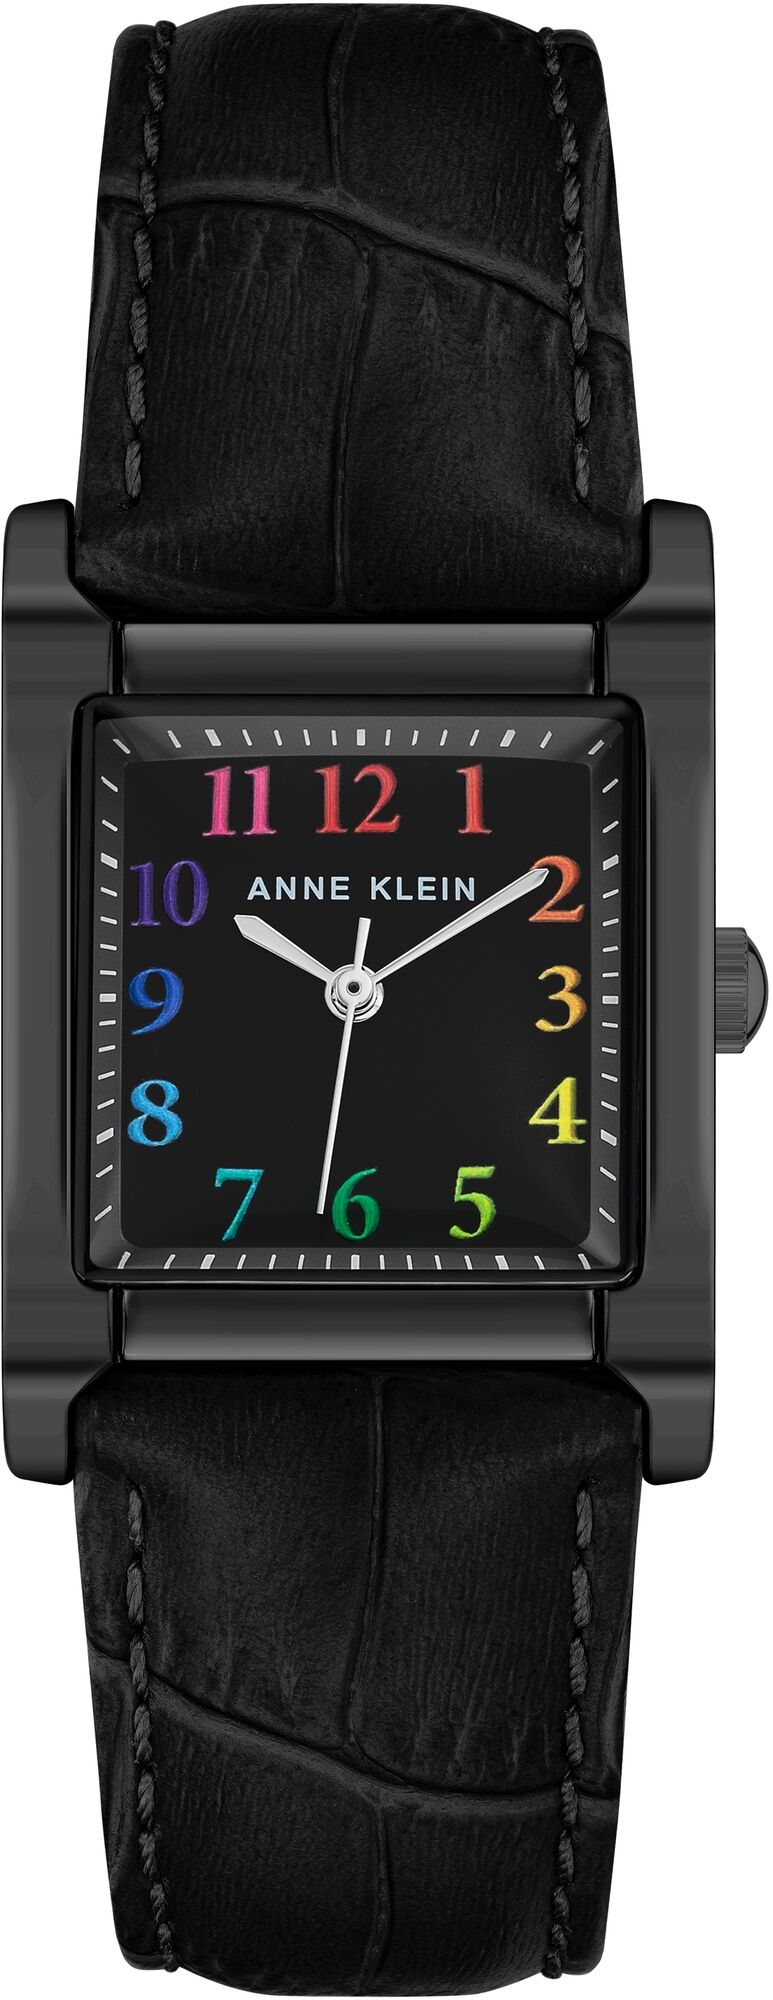 Женские наручные часы Anne Klein Square 3889MTBK